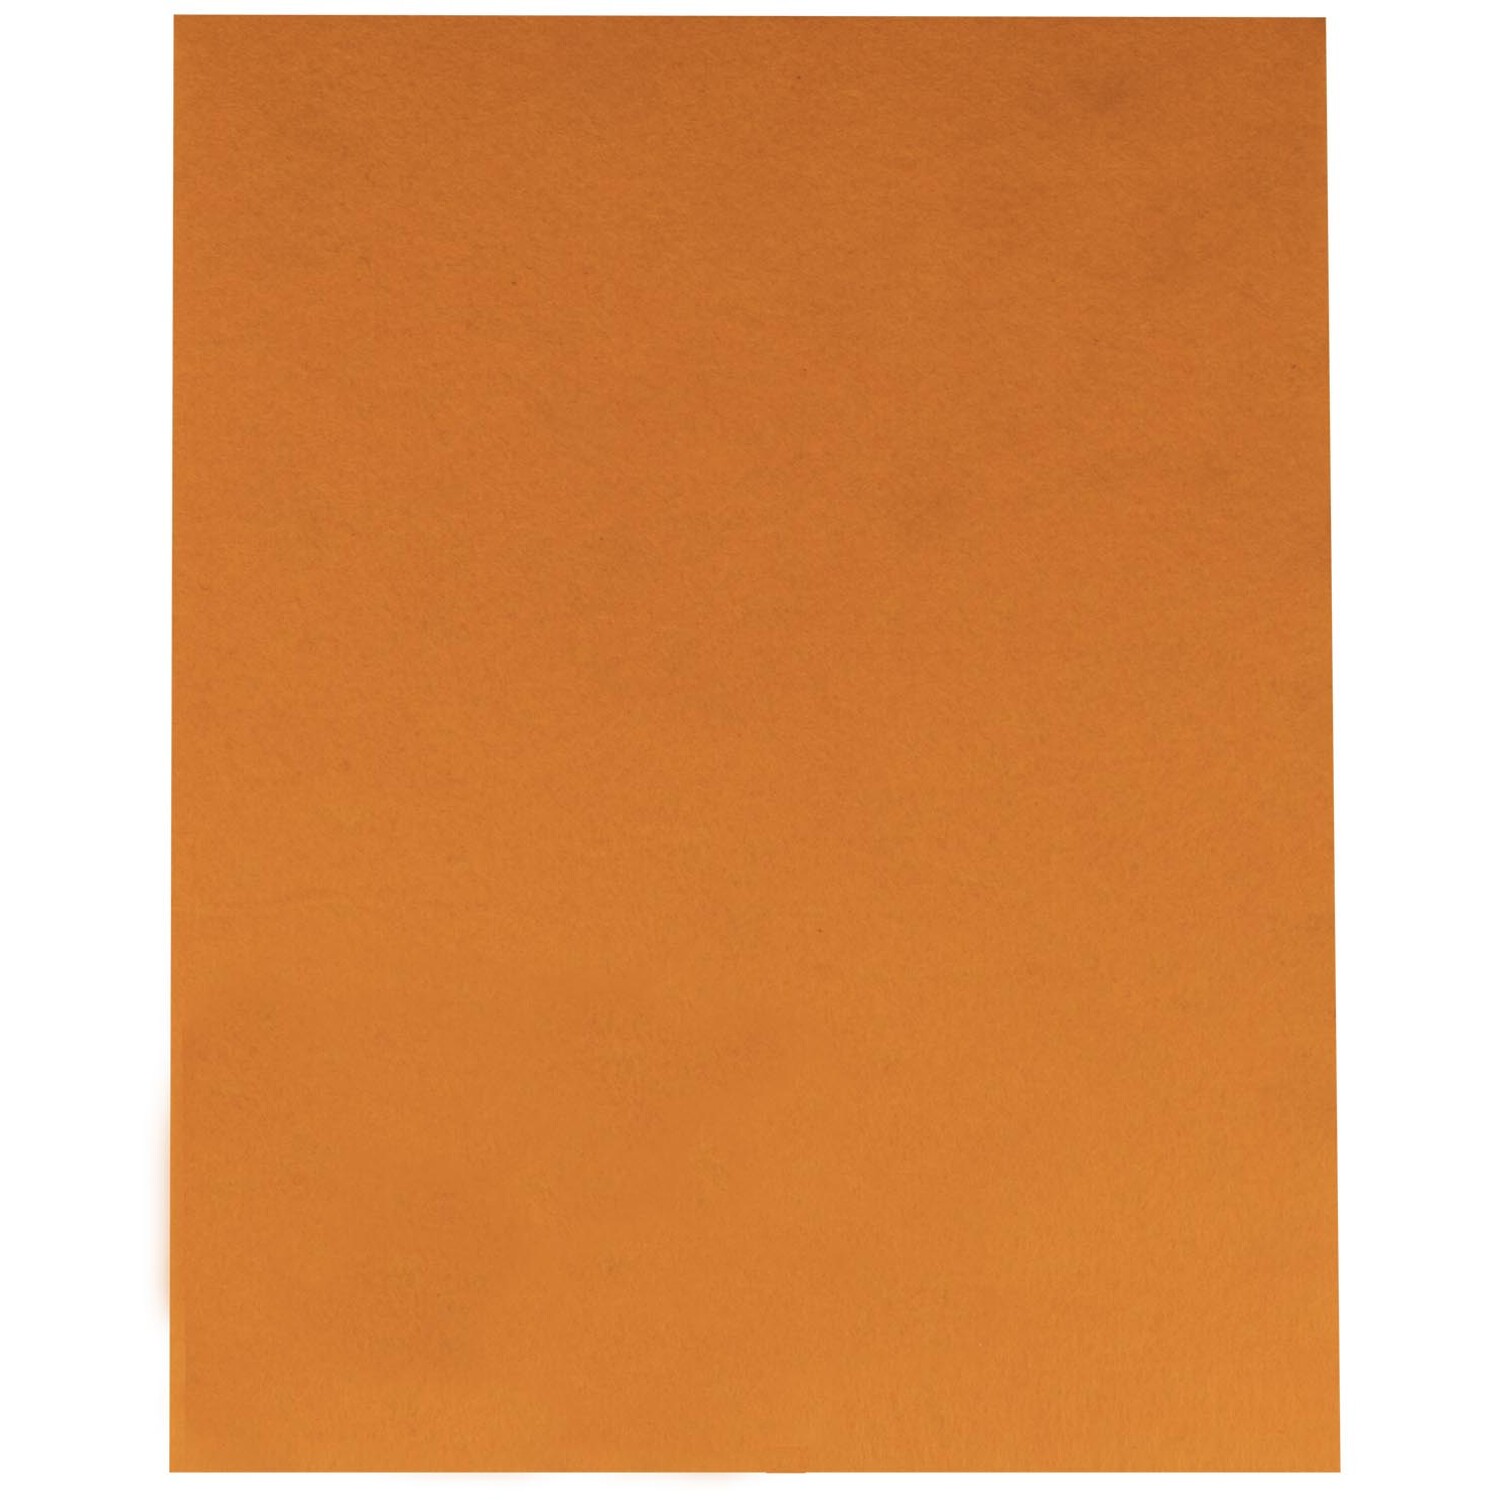 Crafty Club Felt Sheet - Bright Orange Image